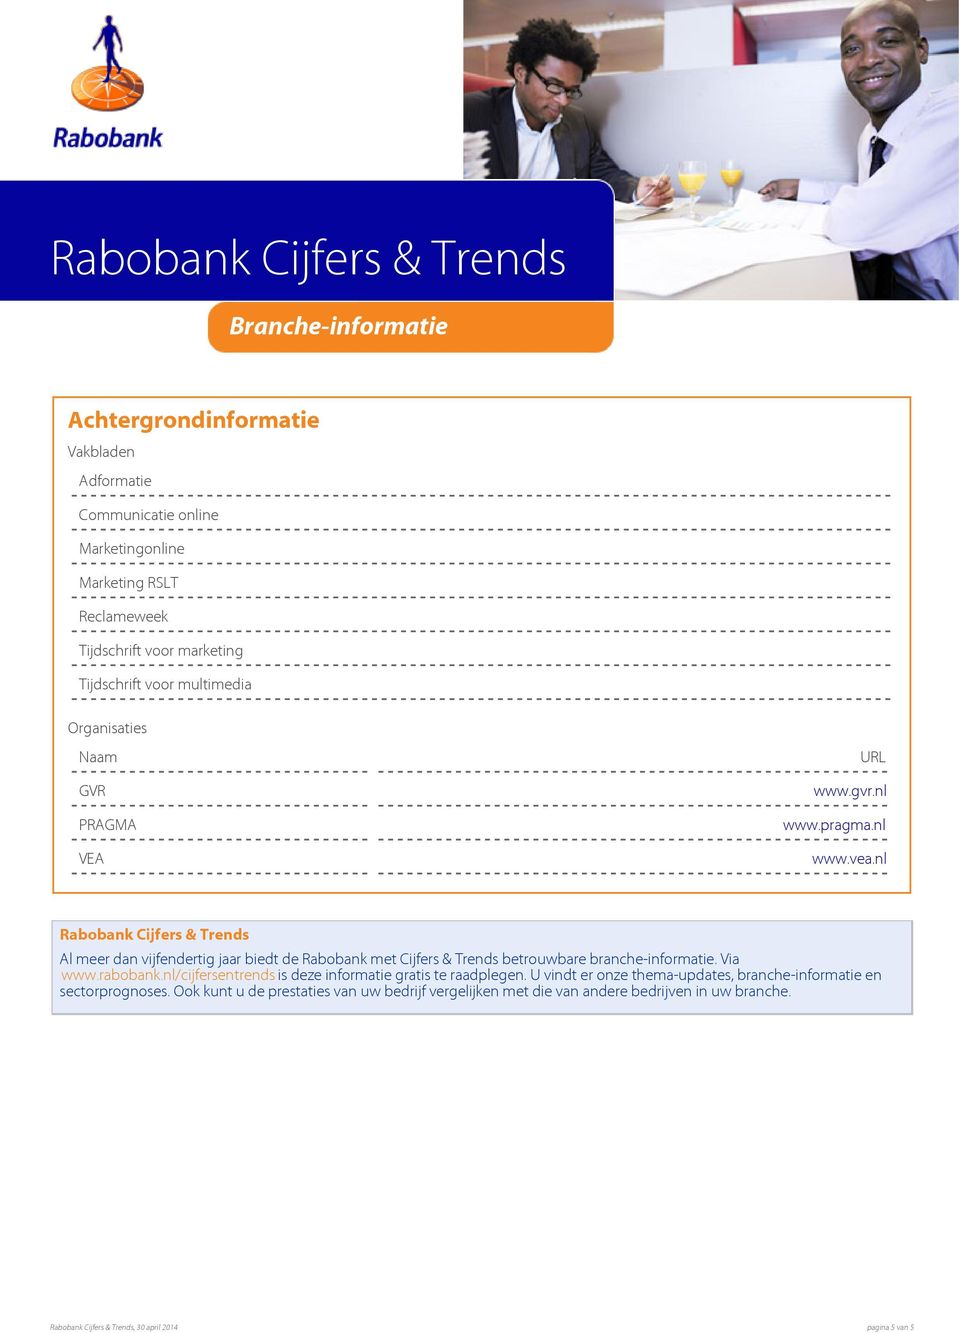 nl Rabobank Cijfers & Trends Al meer dan vijfendertig jaar biedt de Rabobank met Cijfers & Trends betrouwbare branche-informatie. Via www.rabobank.